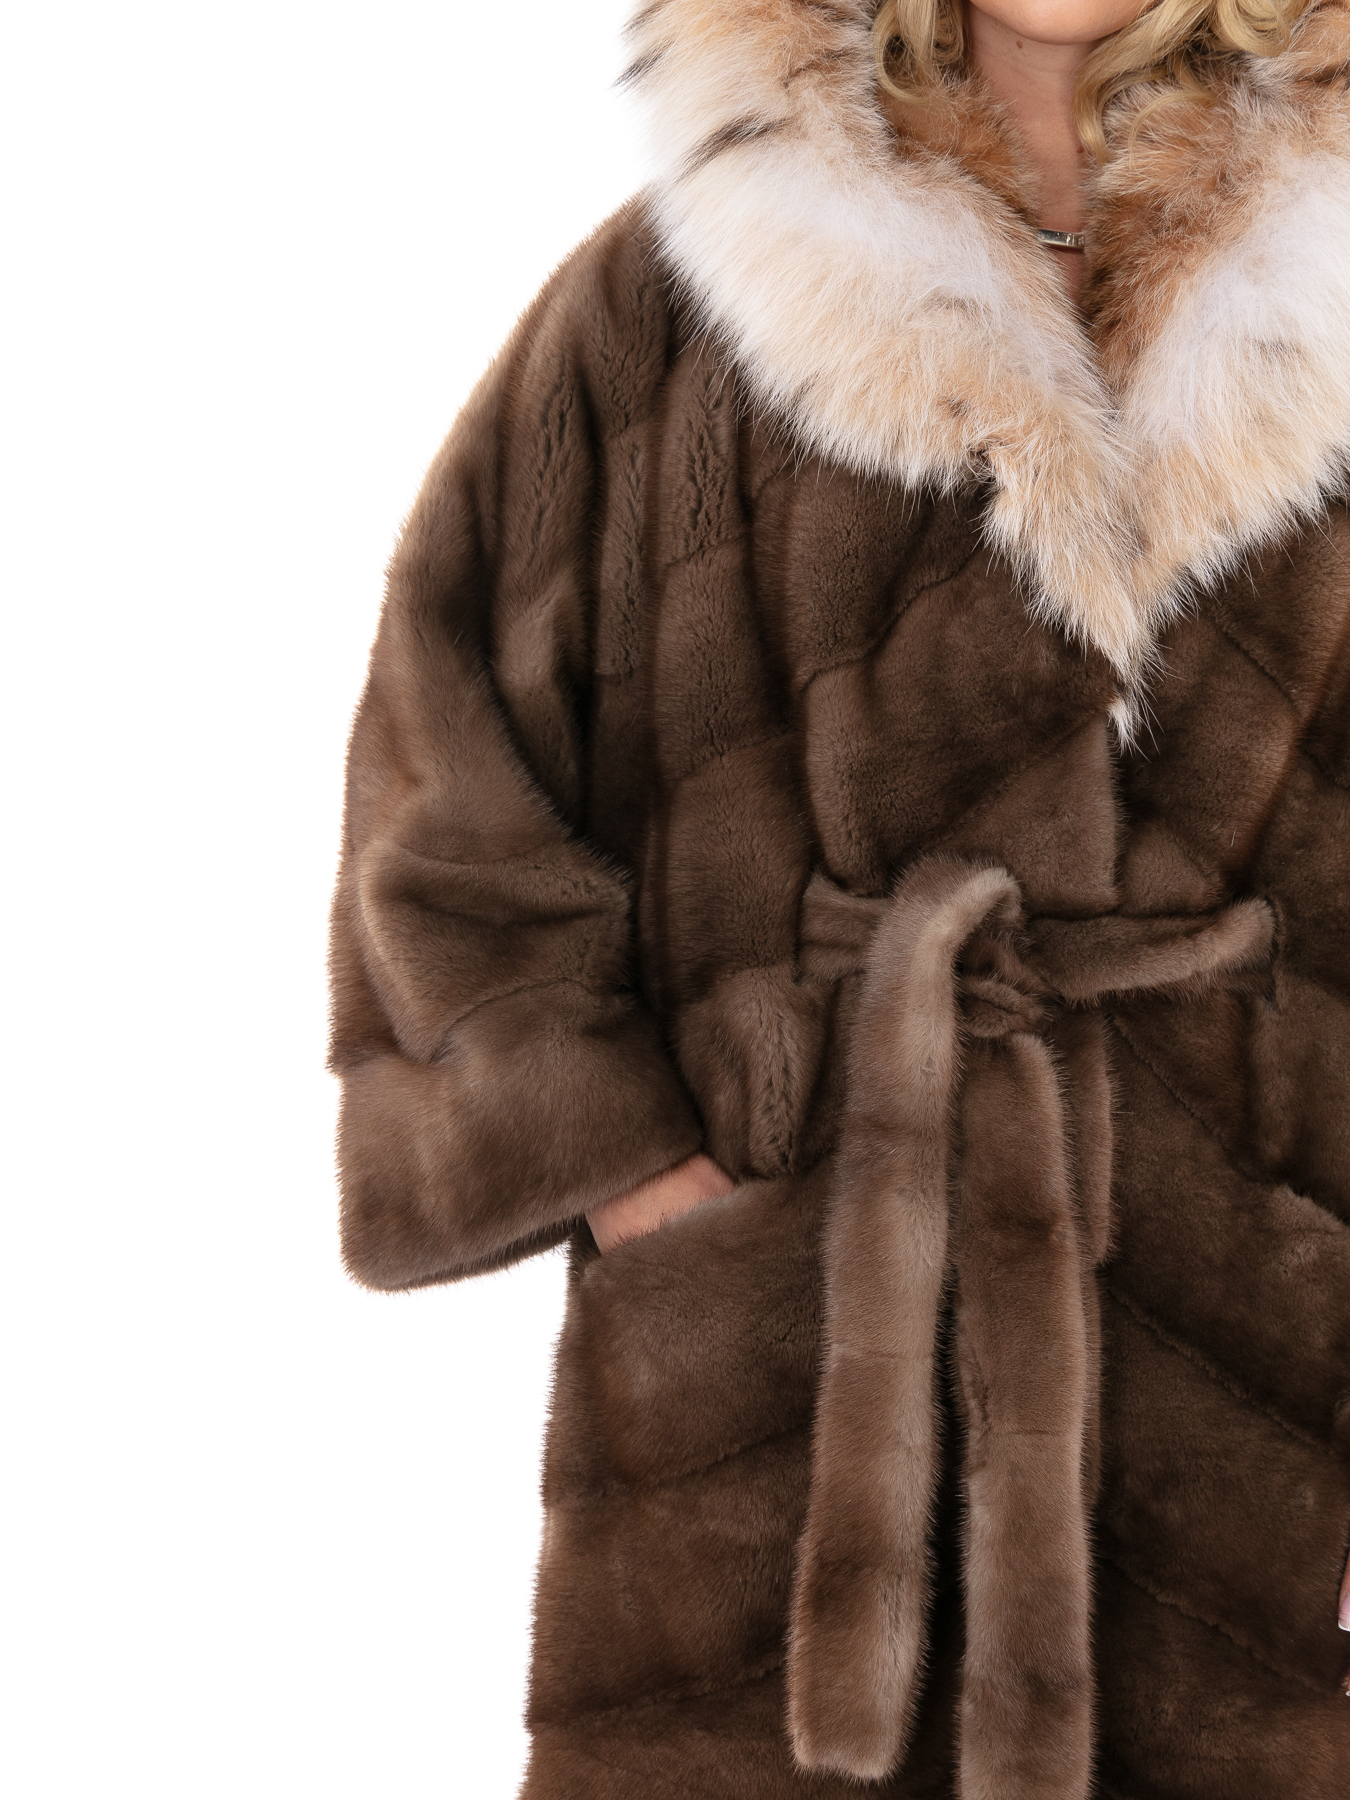 Женское пальто из меха норки с капюшоном, отделка из меха рыси